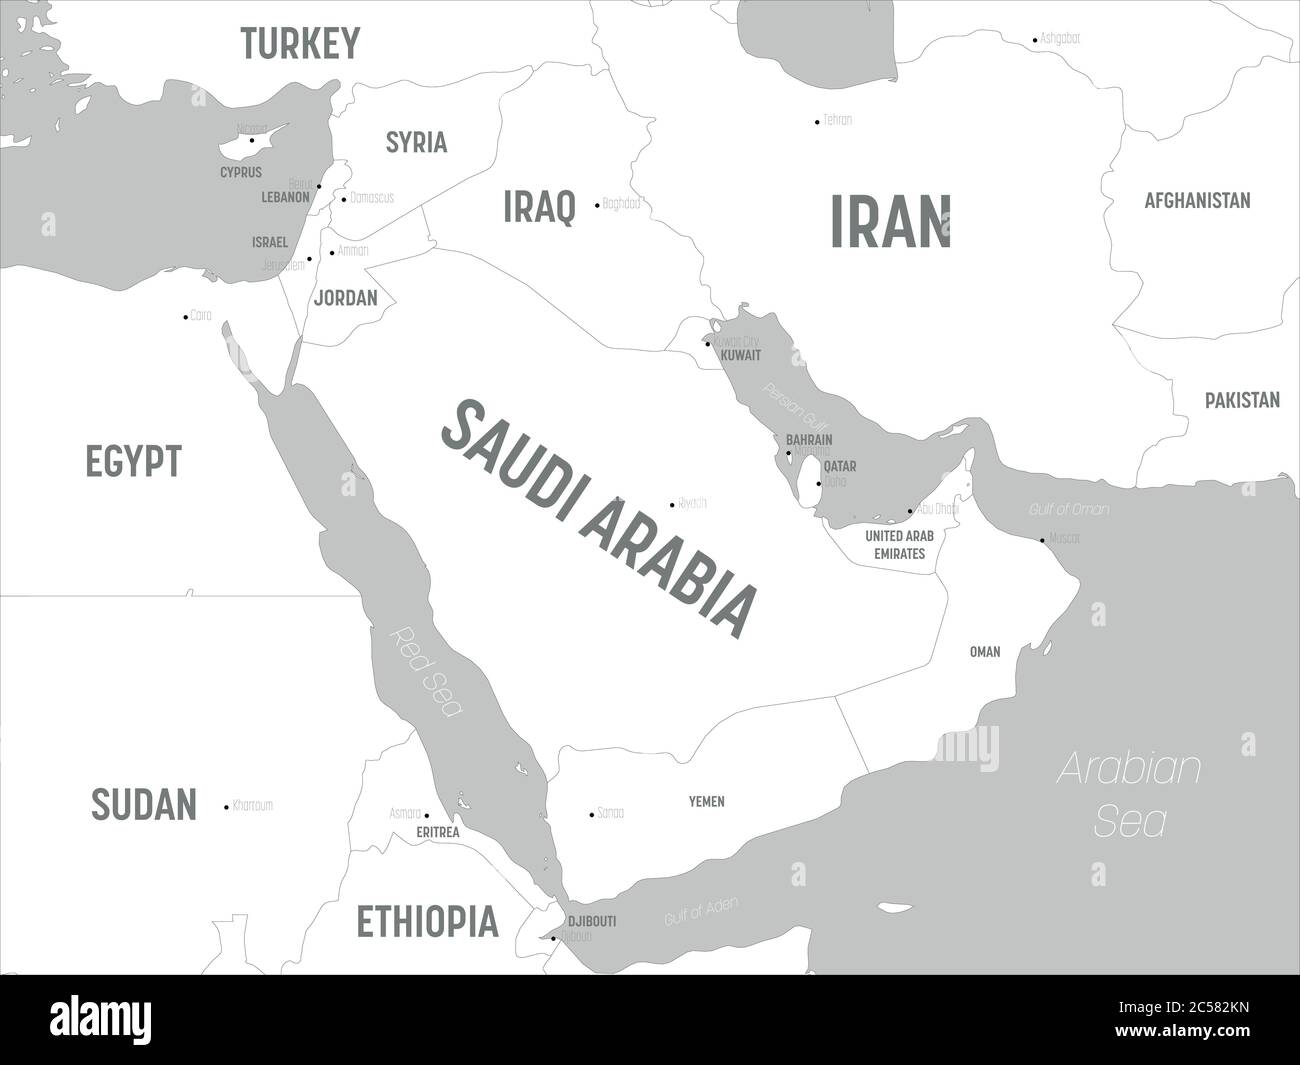 Mappa del Medio Oriente - terre bianche e acque grigie. Mappa politica dettagliata del Medio Oriente e della regione della Penisola arabica con l'etichettatura dei nomi di paesi, capitali, oceani e mari. Illustrazione Vettoriale